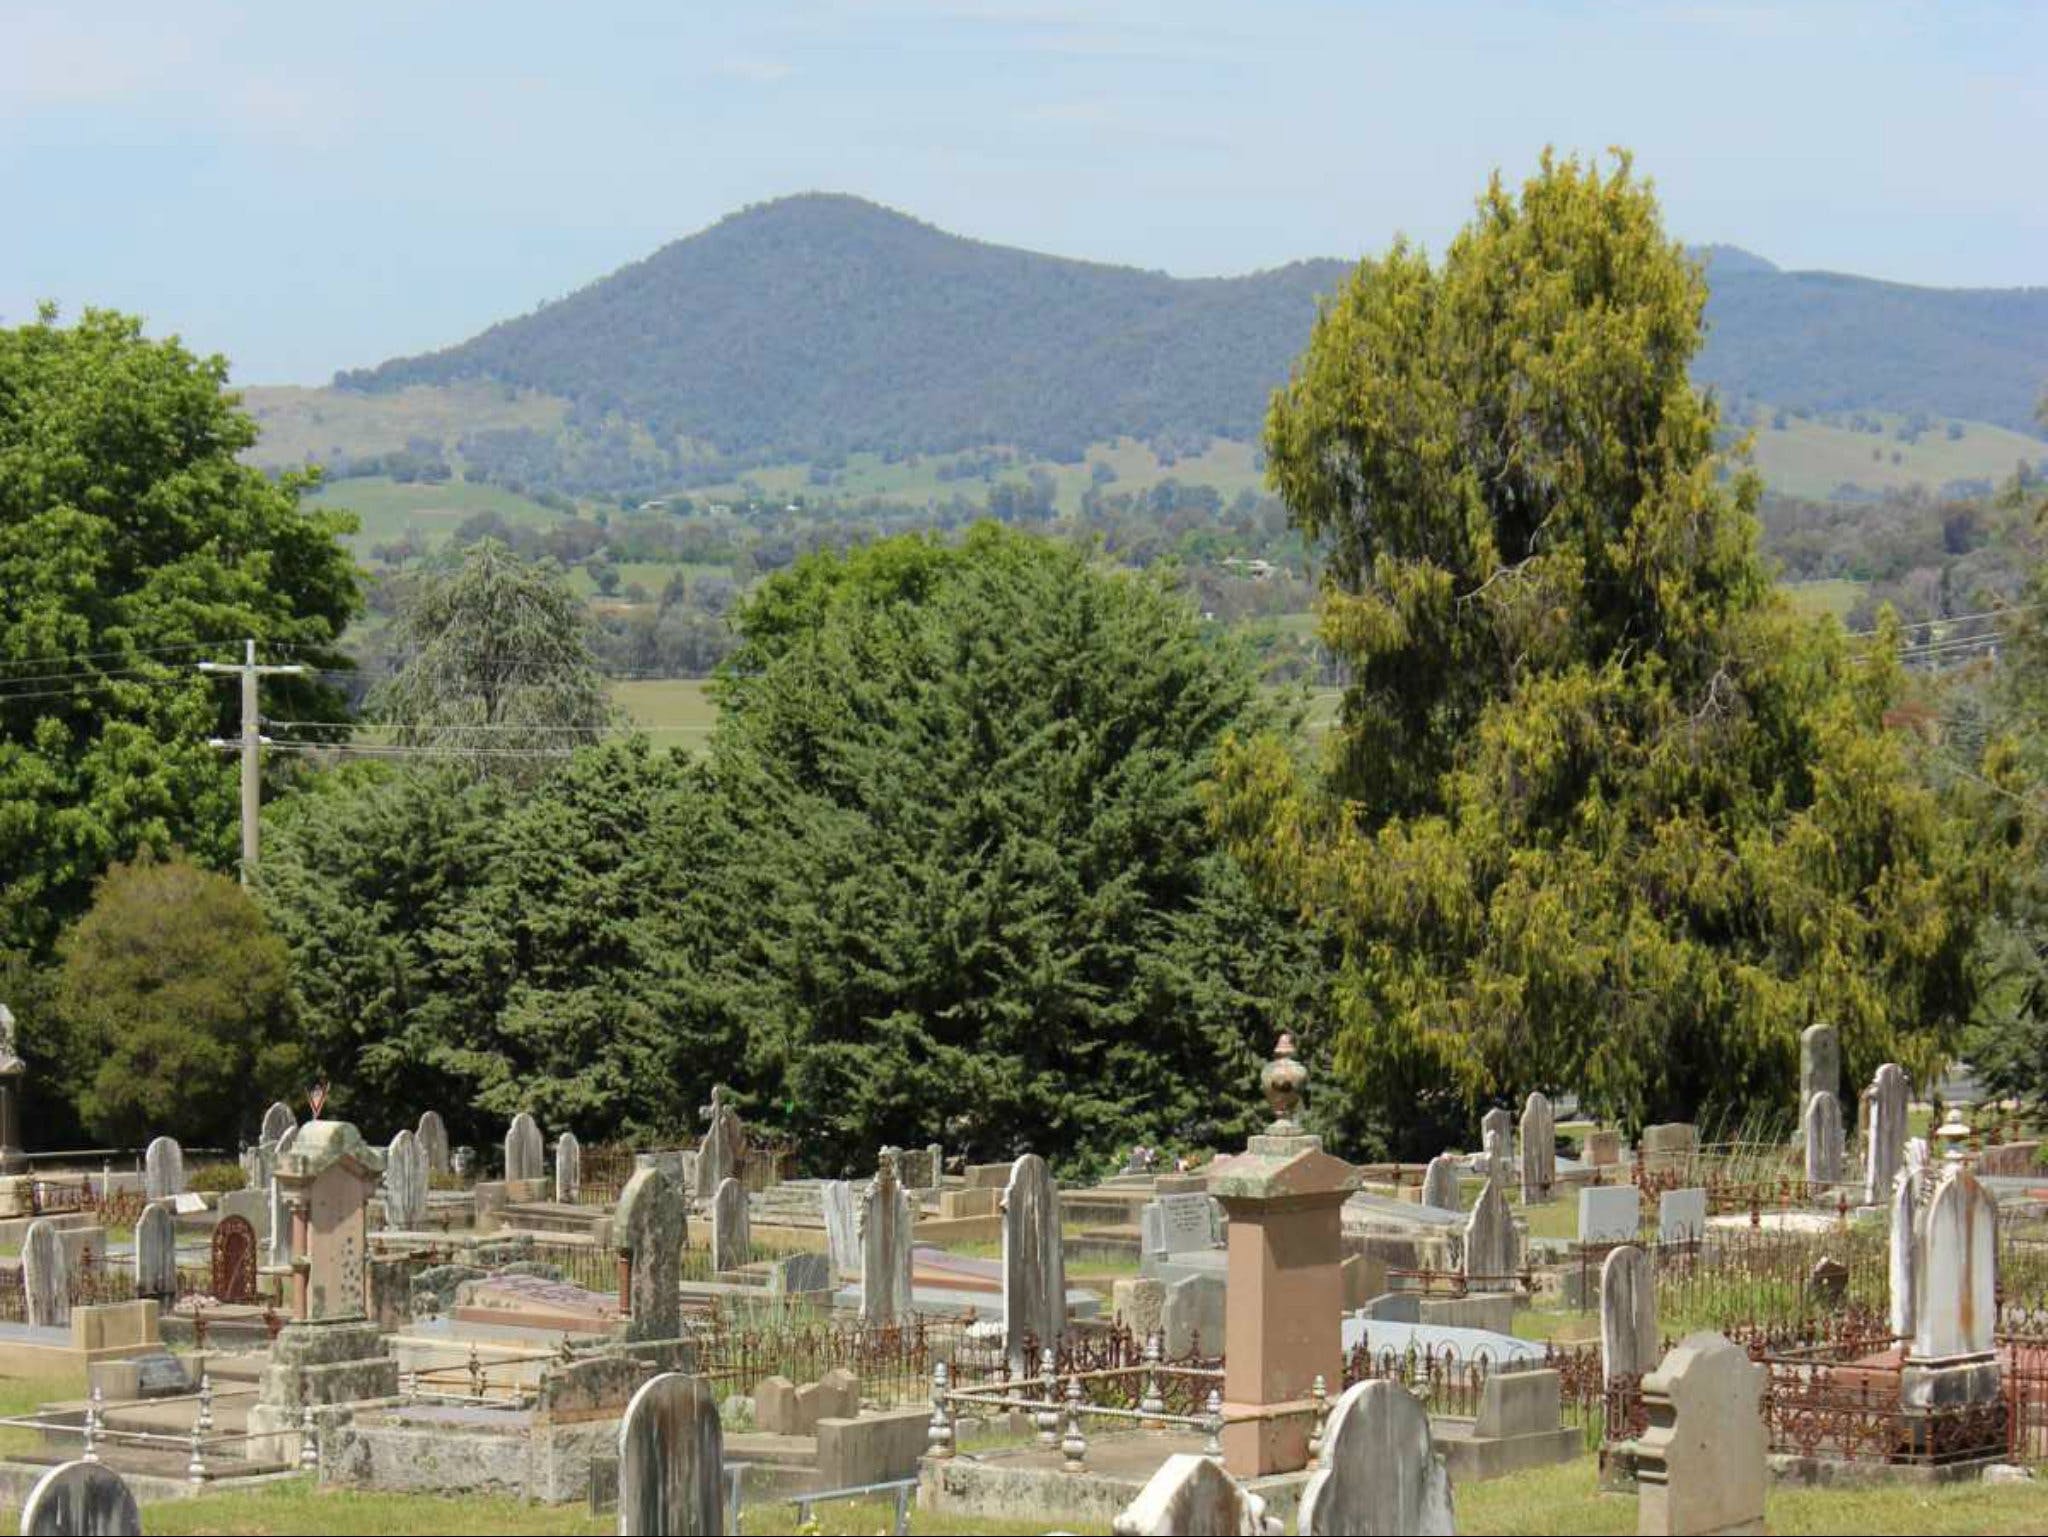 Yackandandah Cemetery - Accommodation Brunswick Heads